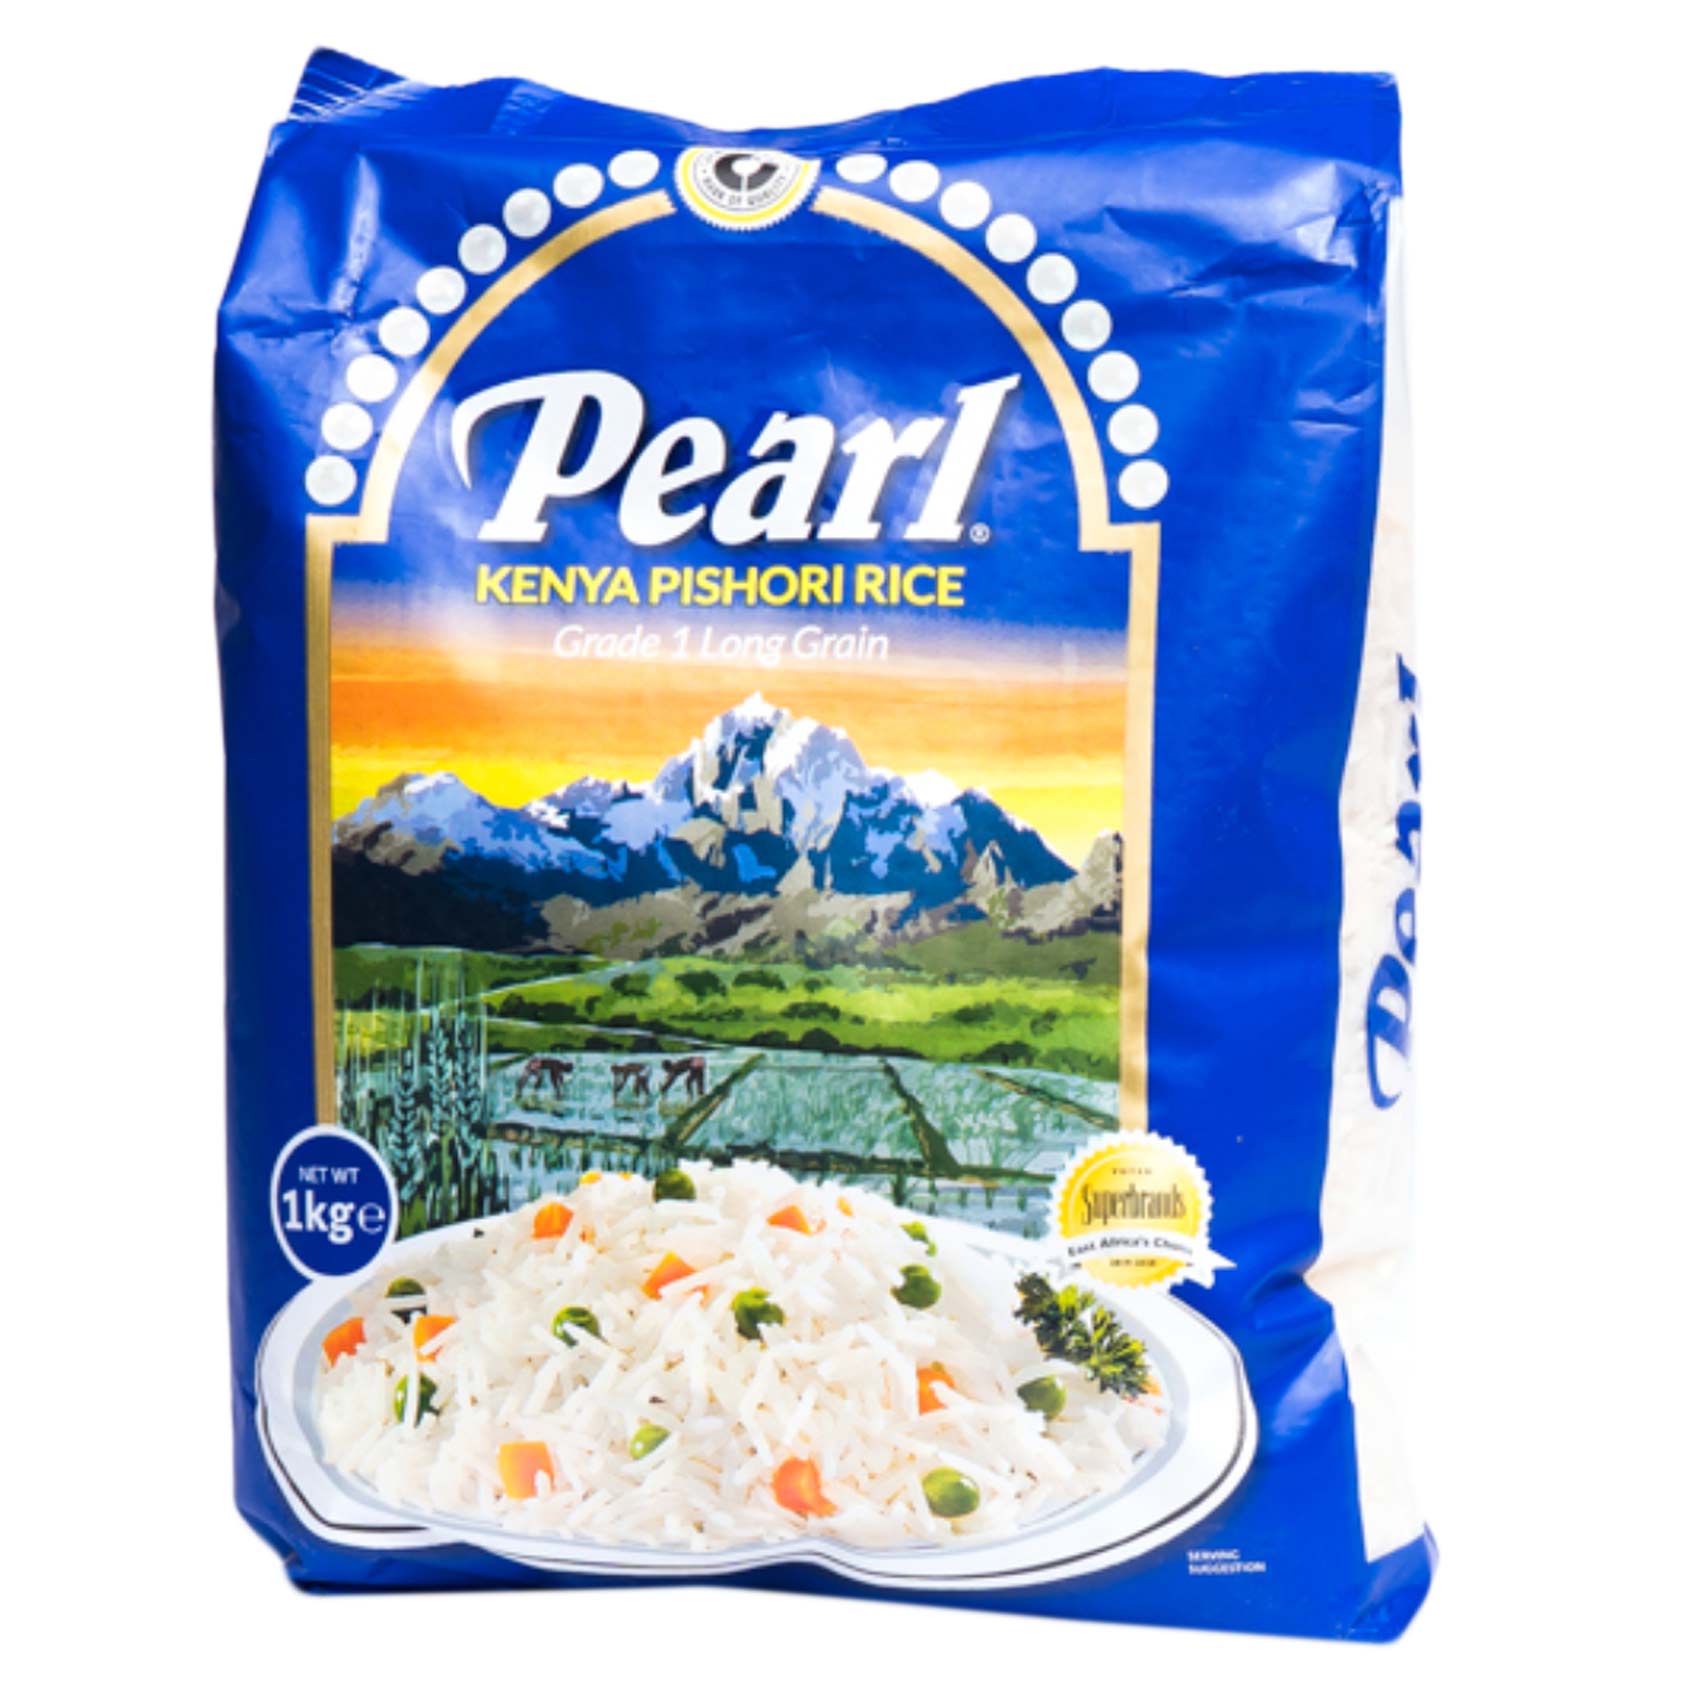 Pearl Grade 1 Long Grain Kenya Pishori Rice 1Kg